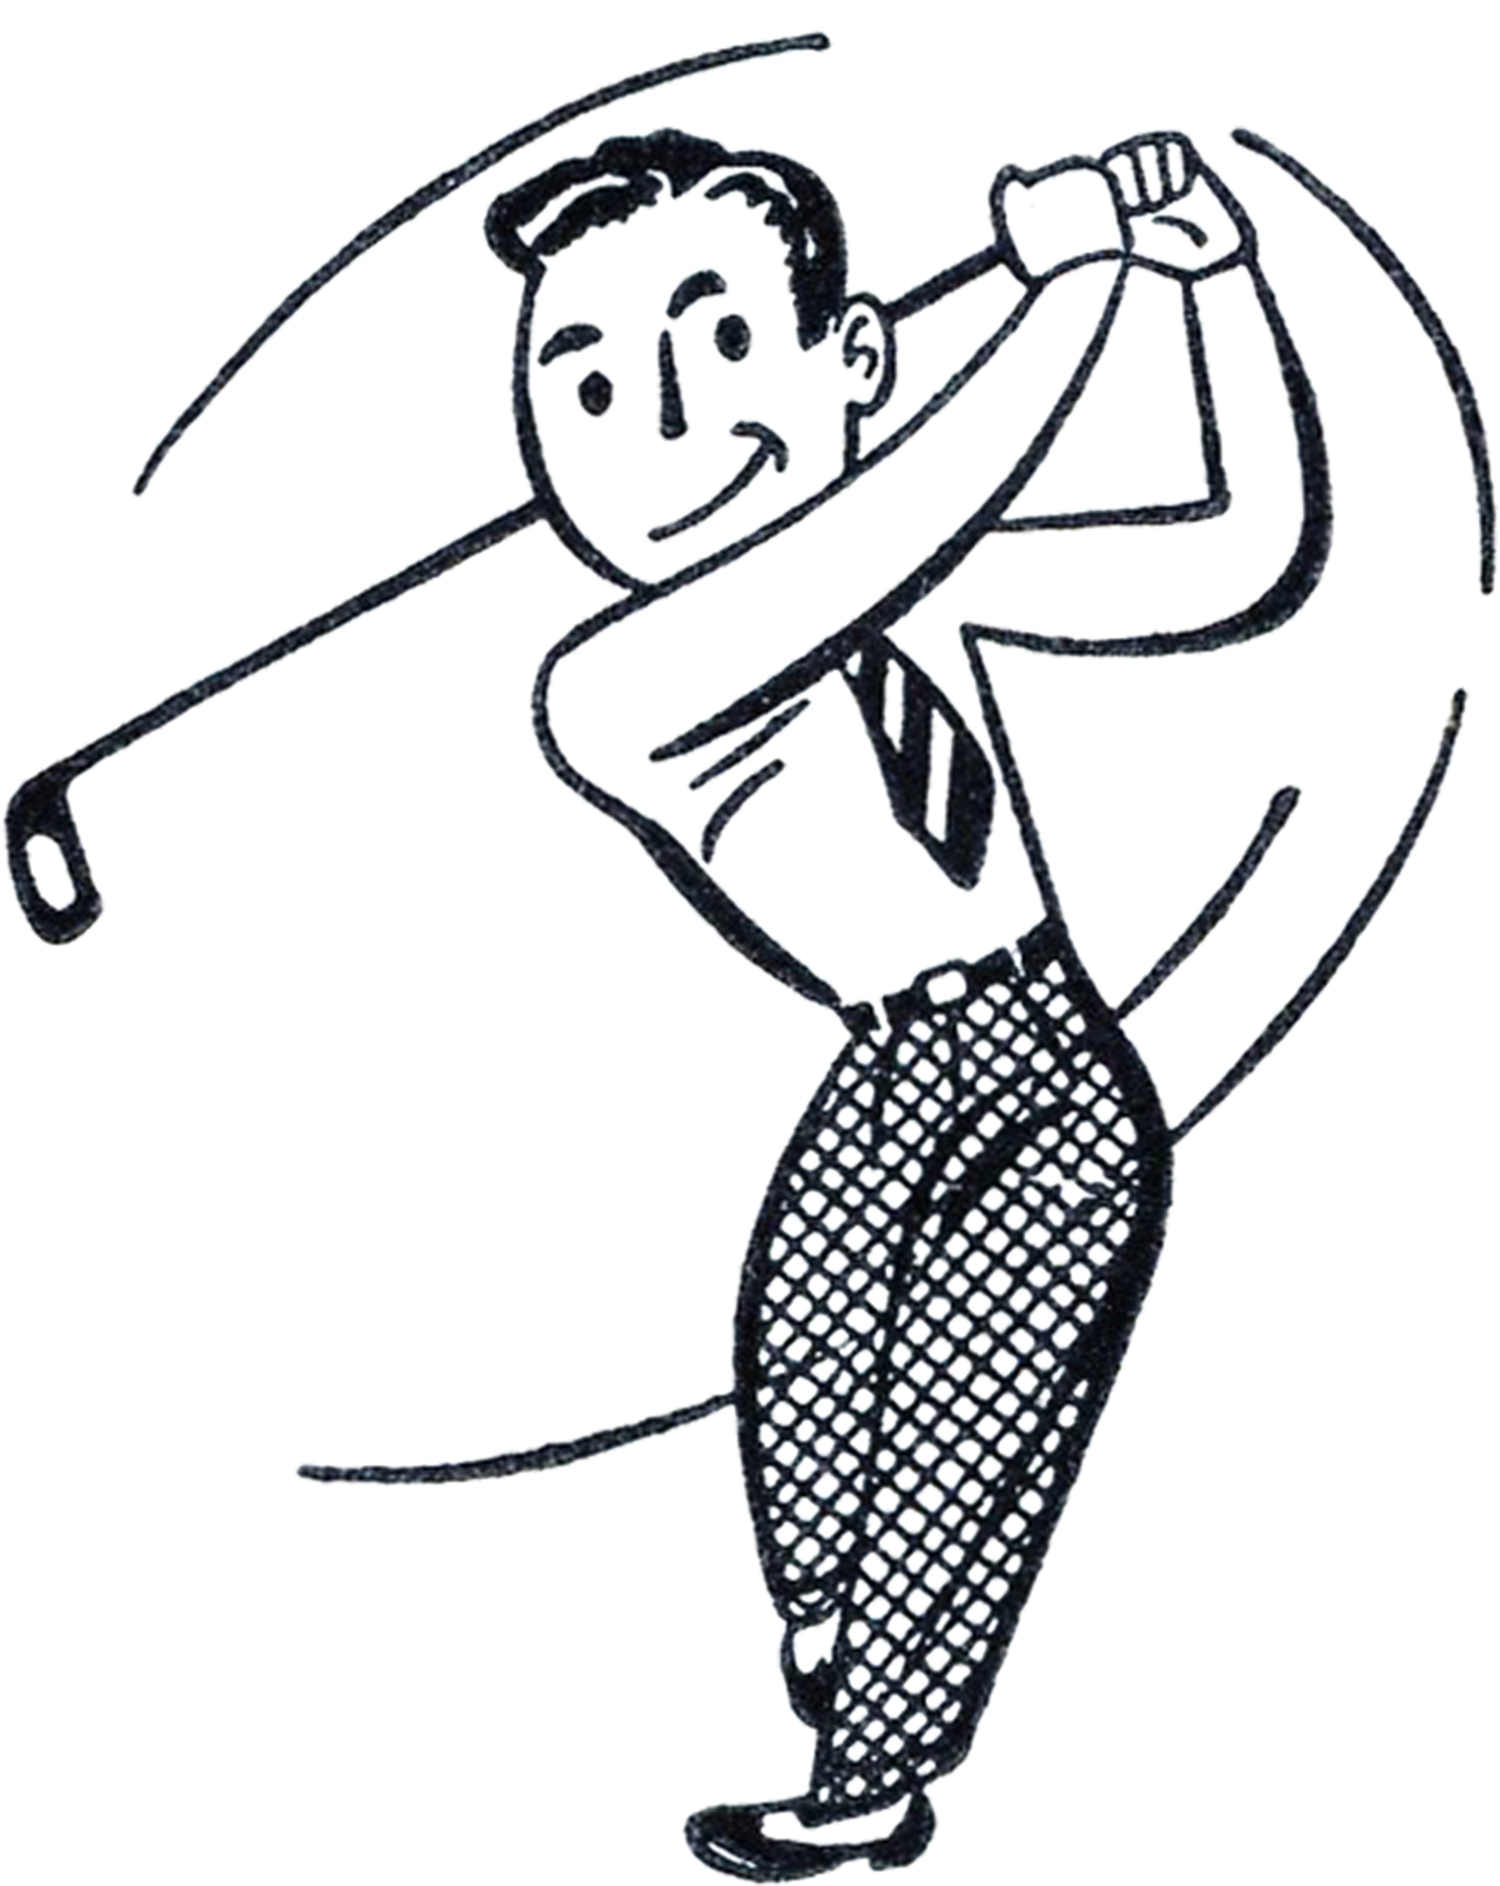 Retro Golf Clip Art   Funny    The Graphics Fairy